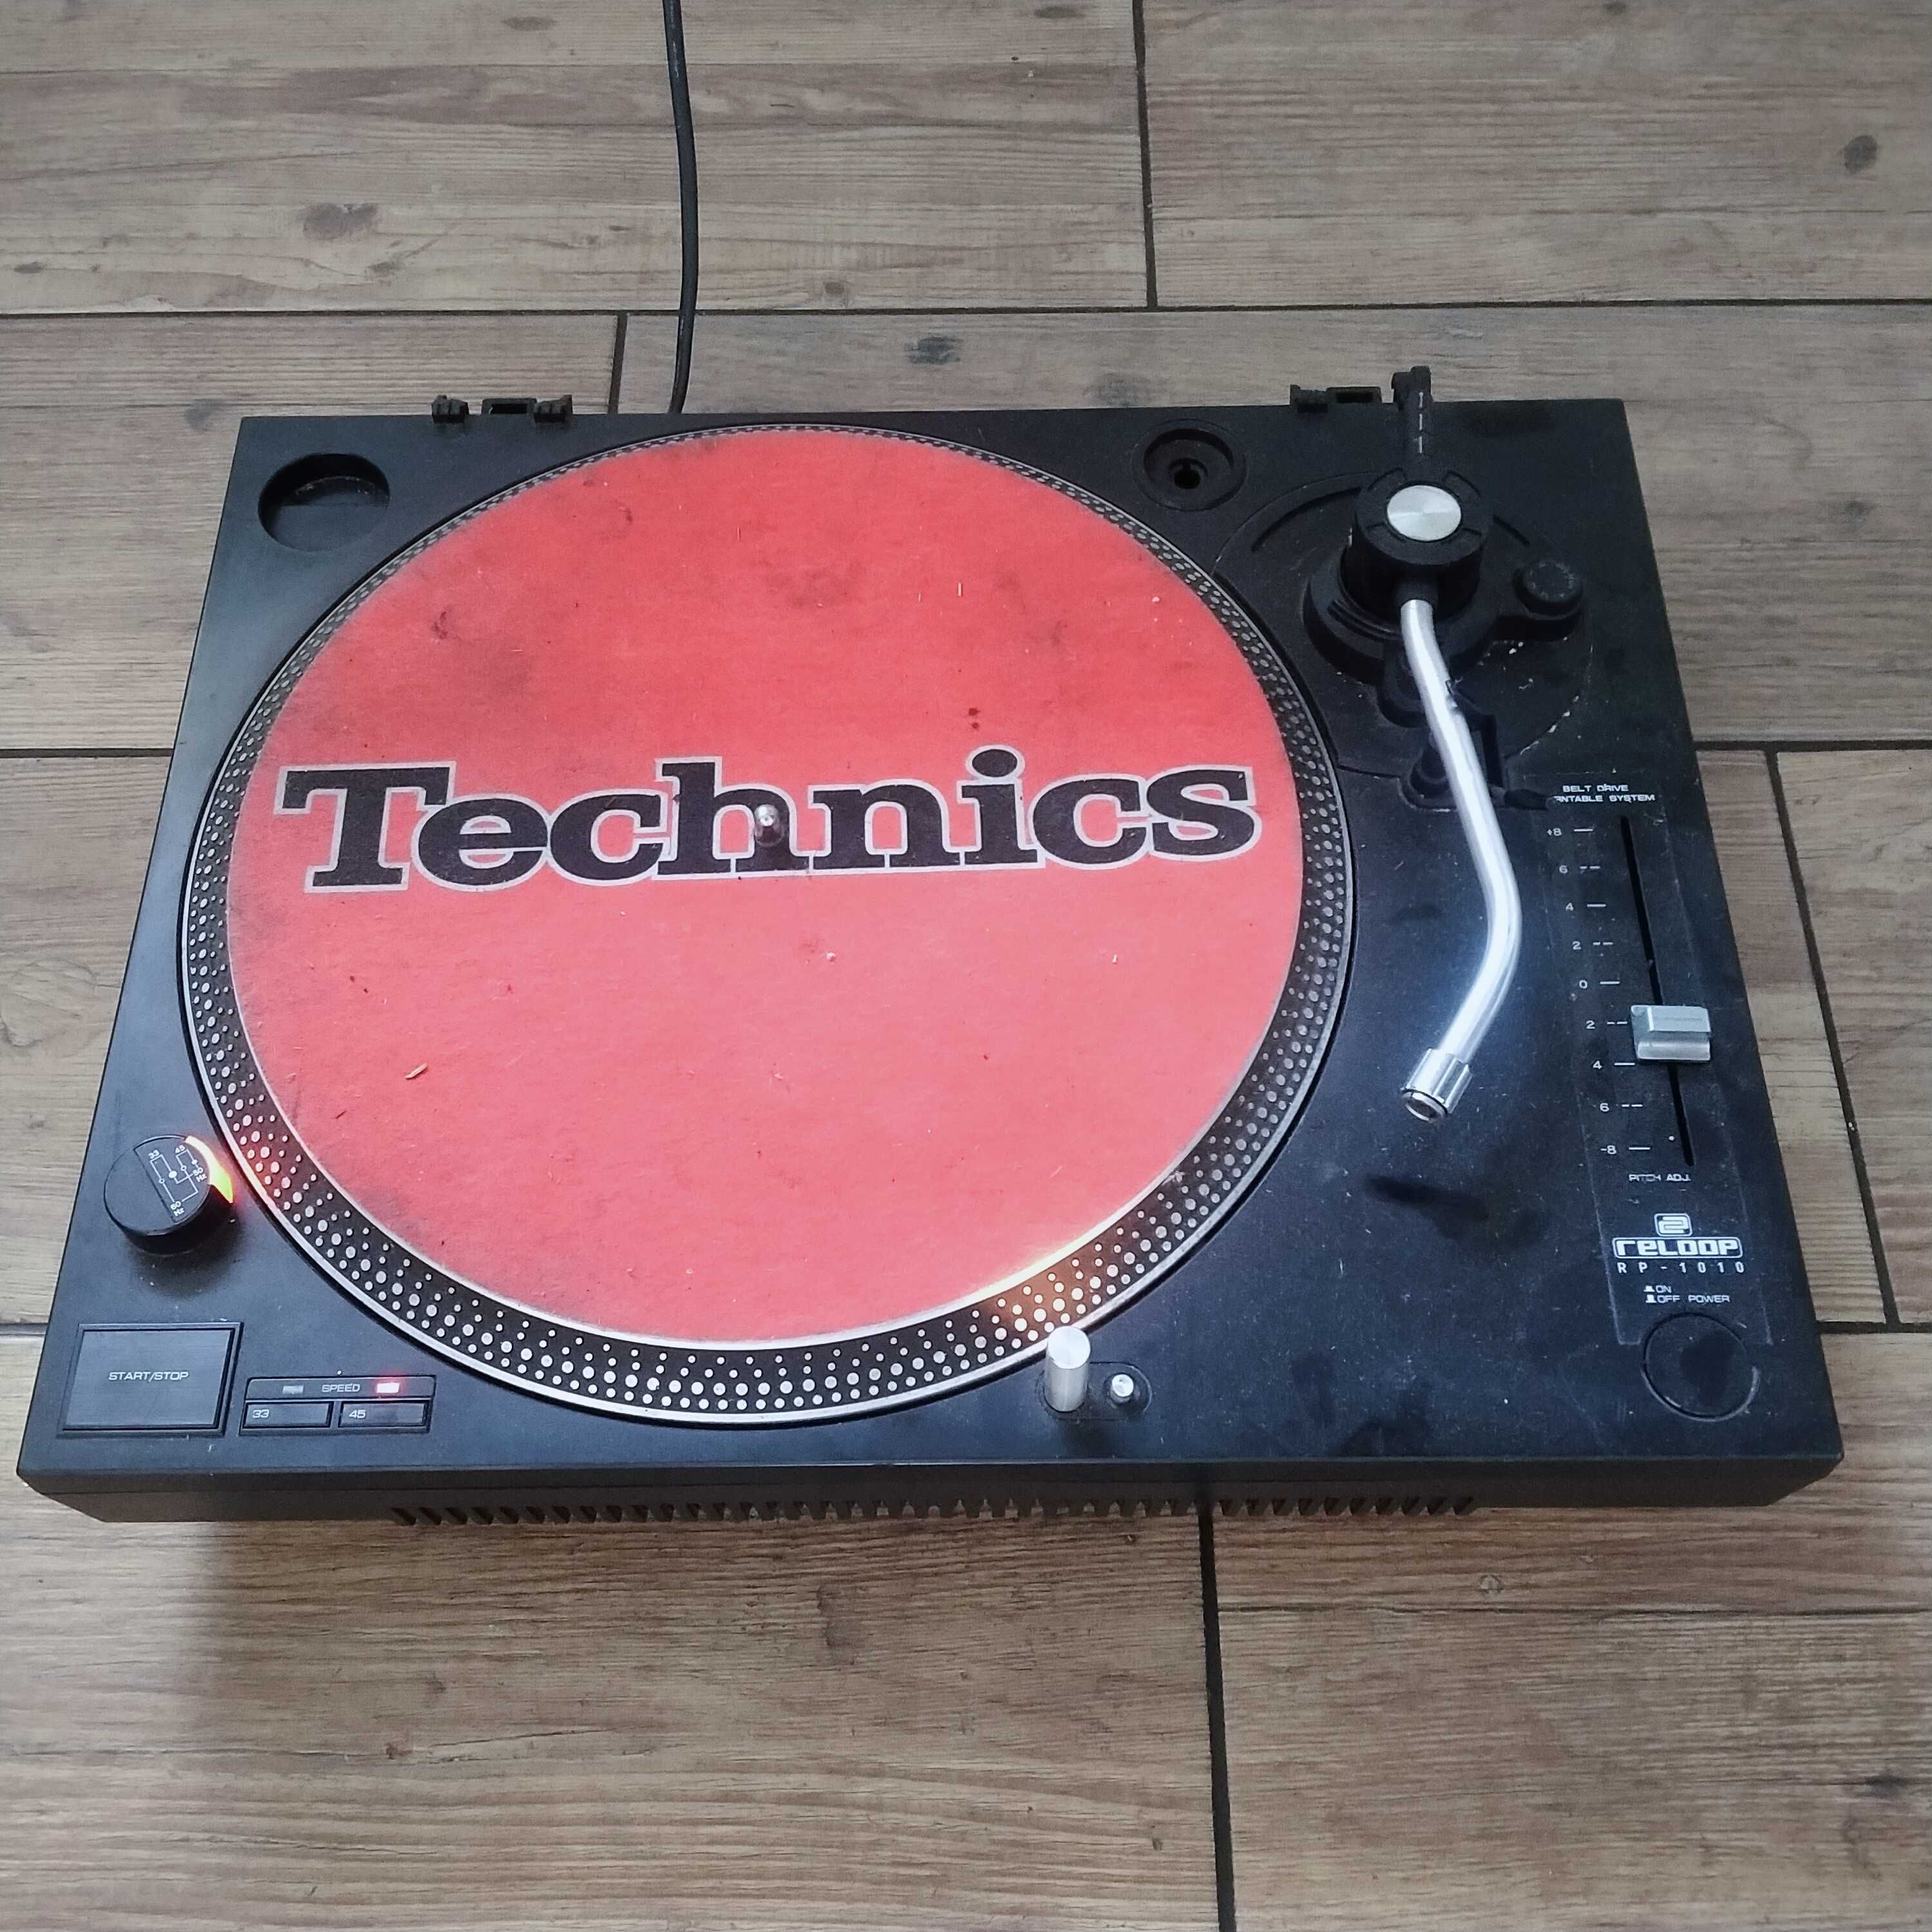 Sprzęt DJ'ski Technics Reloop RP-1010 i odtwarzacz Hollywood DJ-X5.